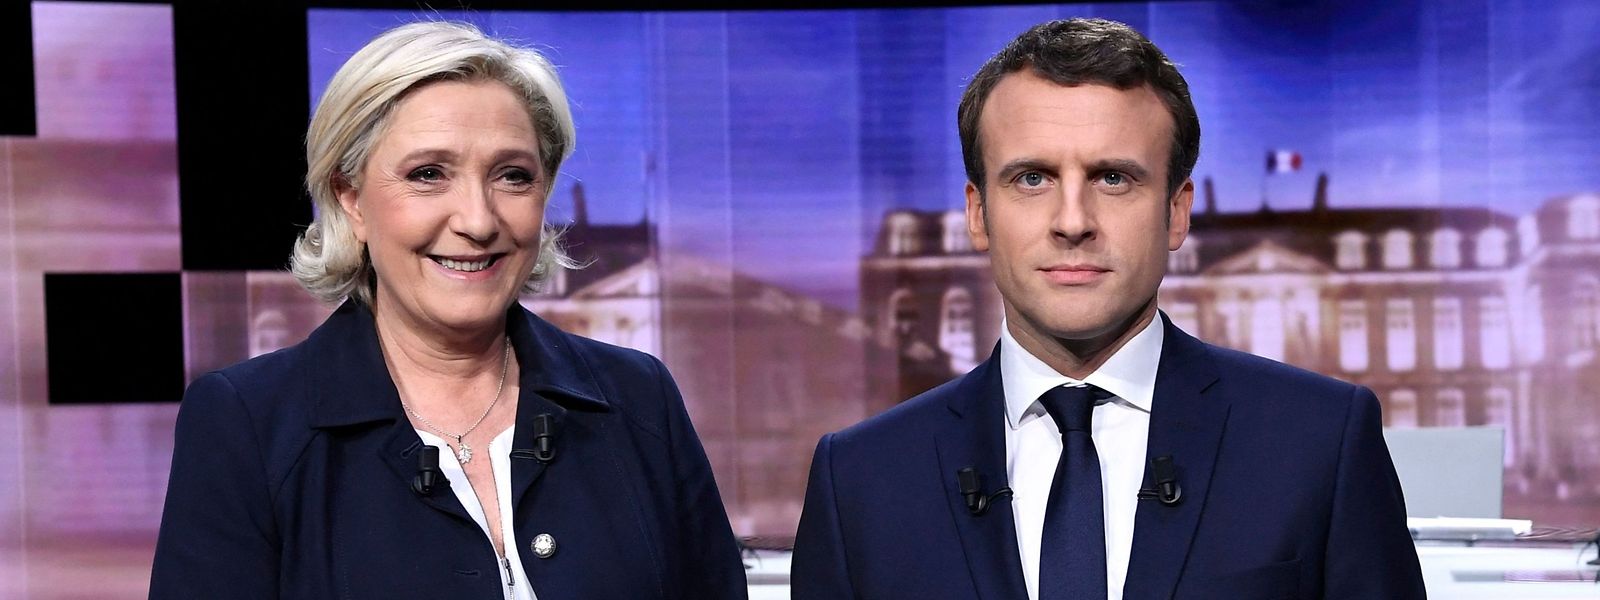 Le duel entre Marine Le Pen et Emmanuel Macron s'annonce bien plus serré qu'en 2017.